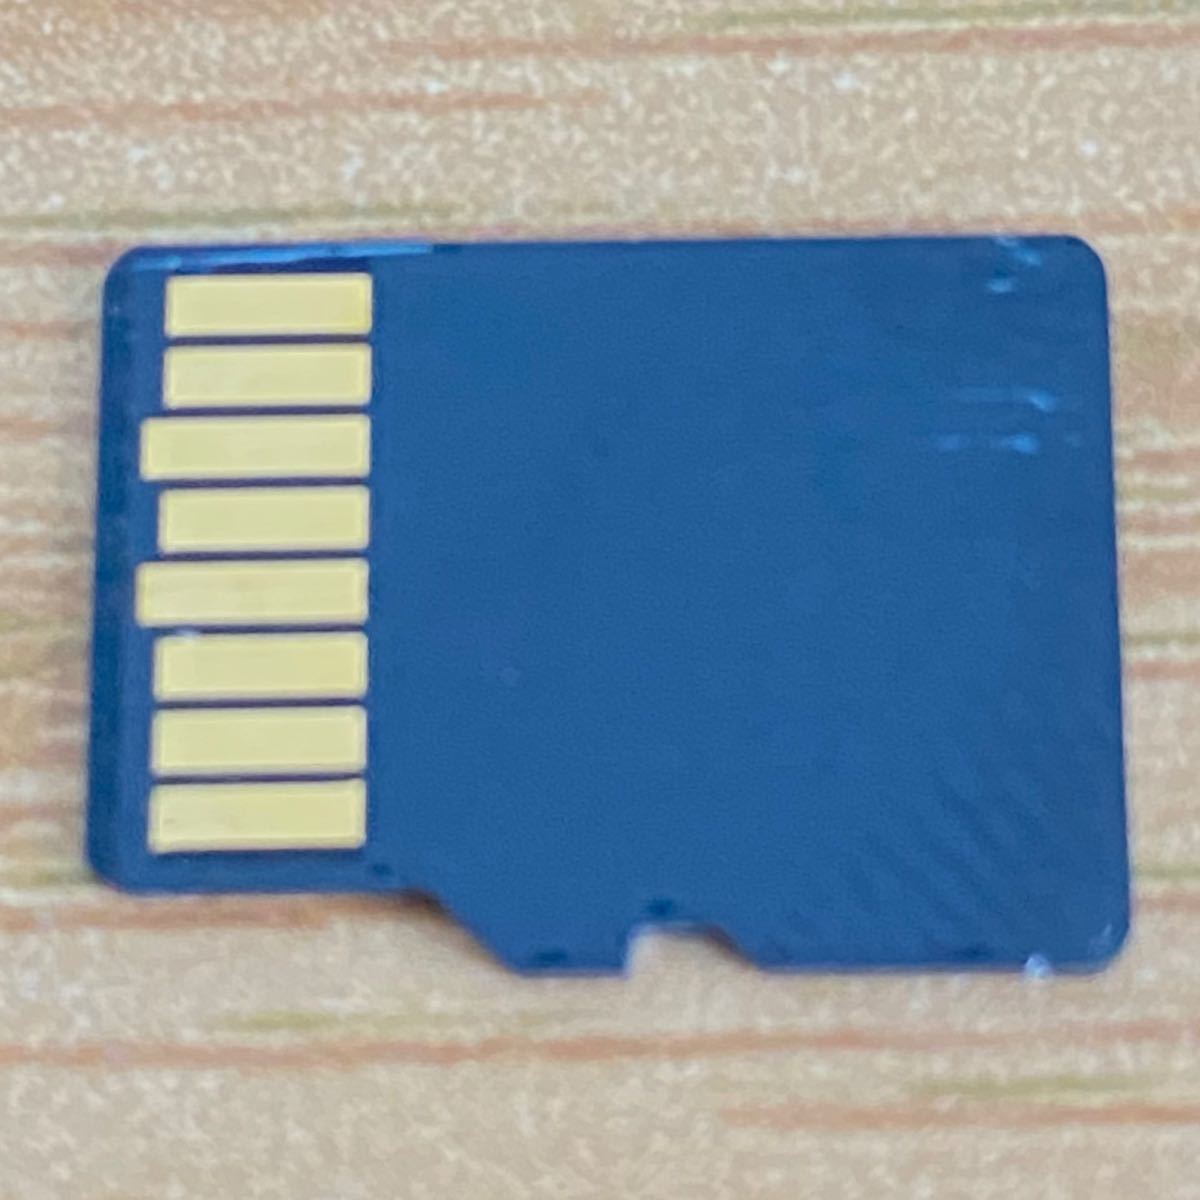 SanDisk マイクロSDカード 2GB